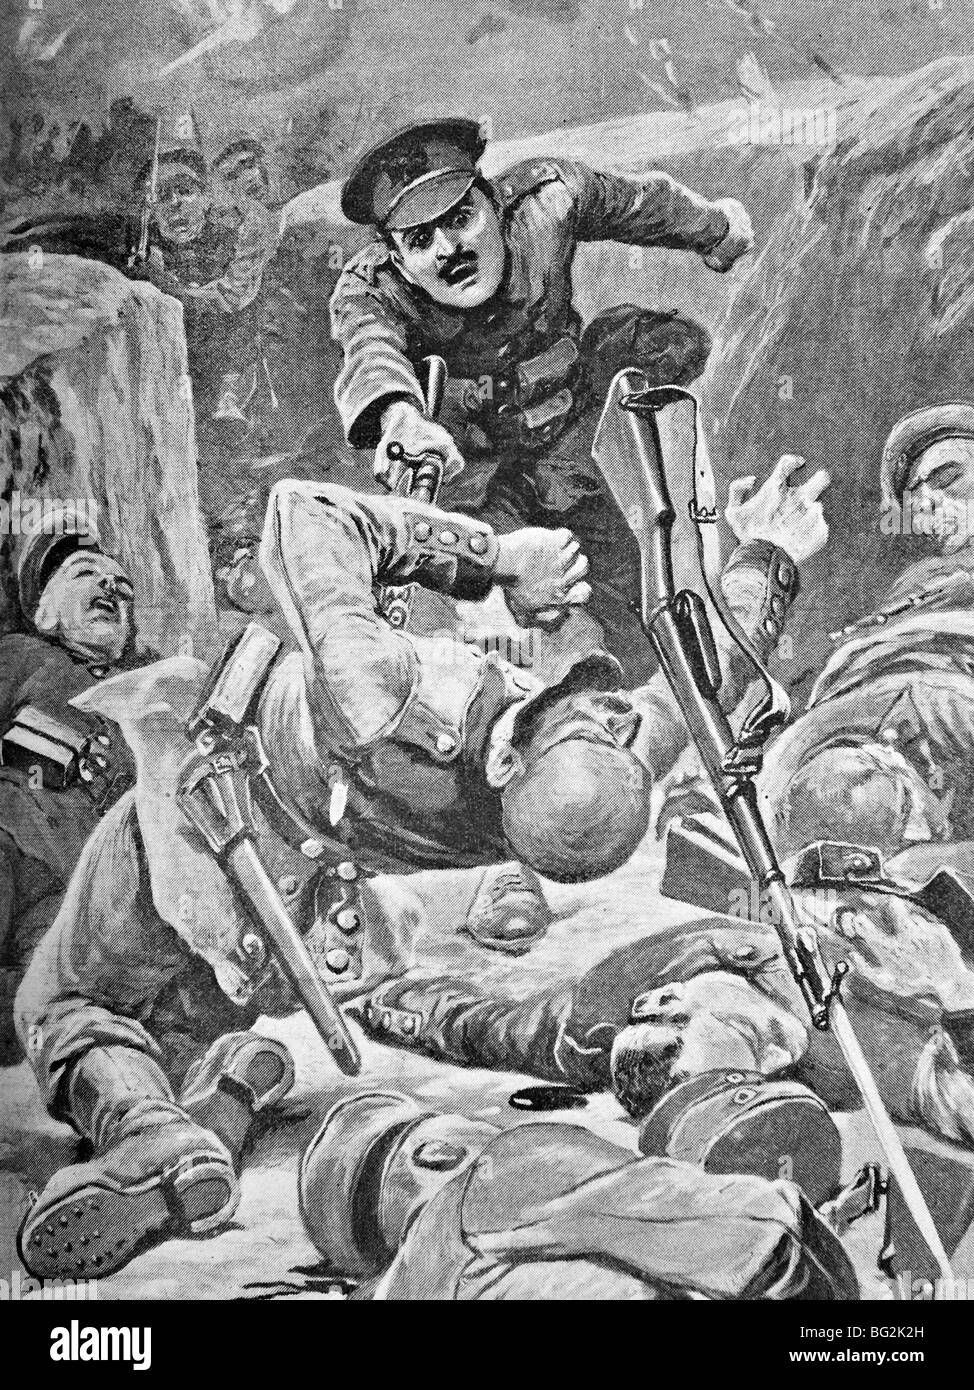 WW1 illustration contemporaine de soldat britannique d'assaut une tranchée allemande dans la bataille de Loos 1915 - une action qui a remporté un DCM. Banque D'Images